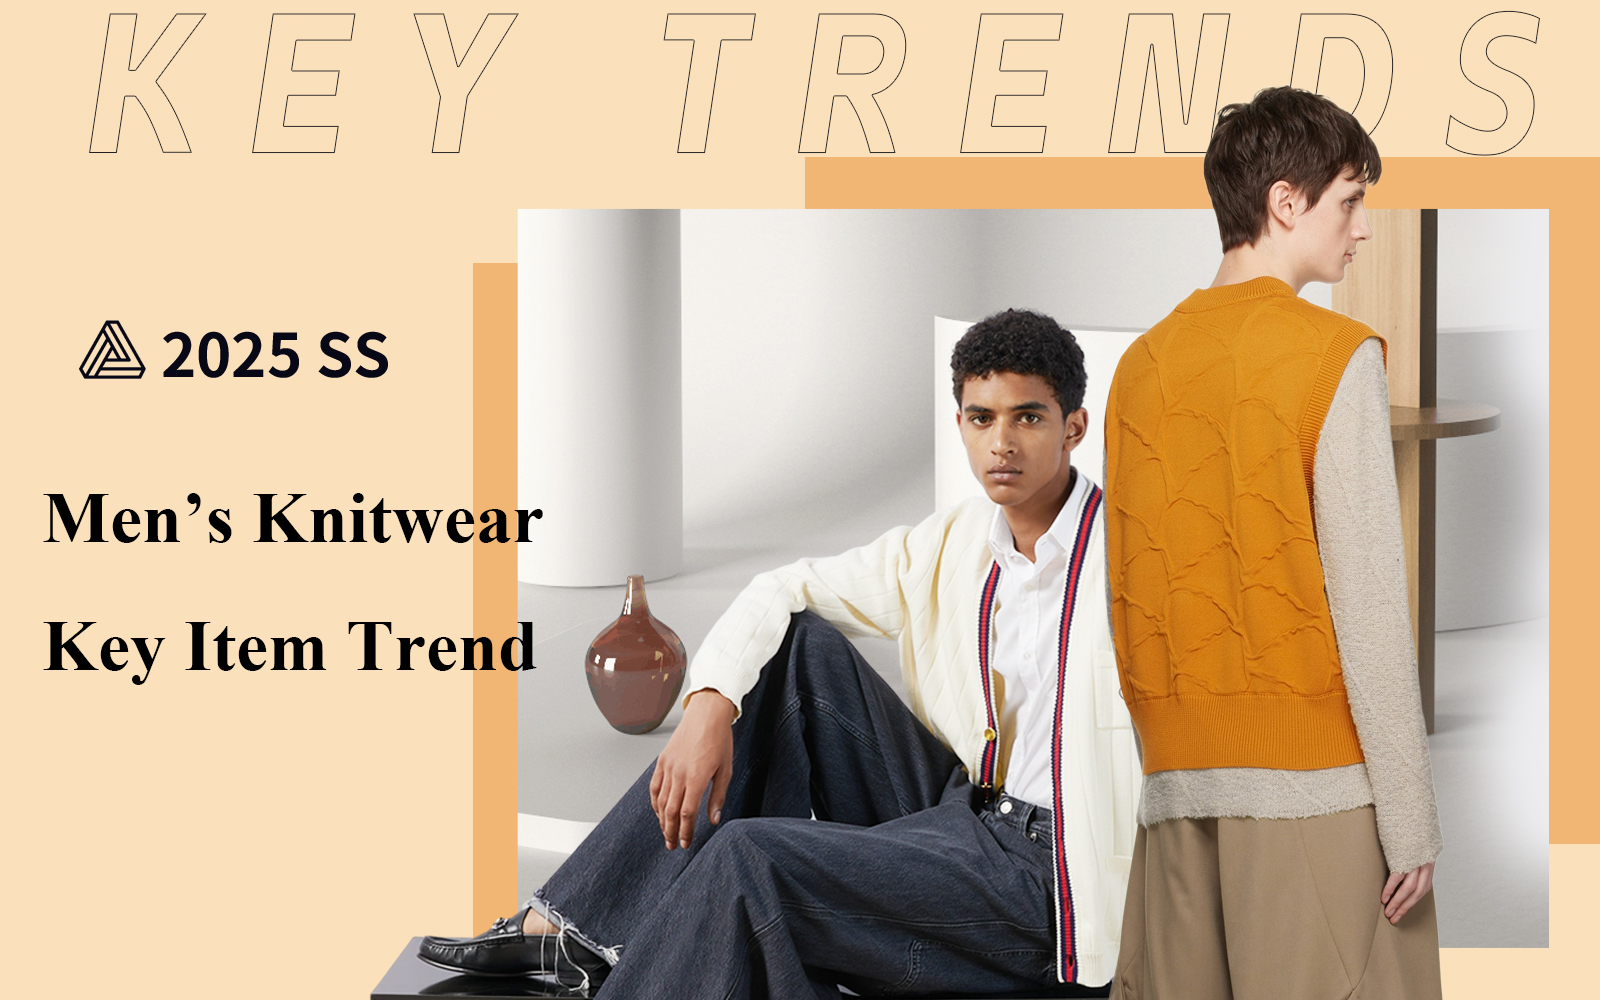 The Key Item Trend for Men's Knitwear